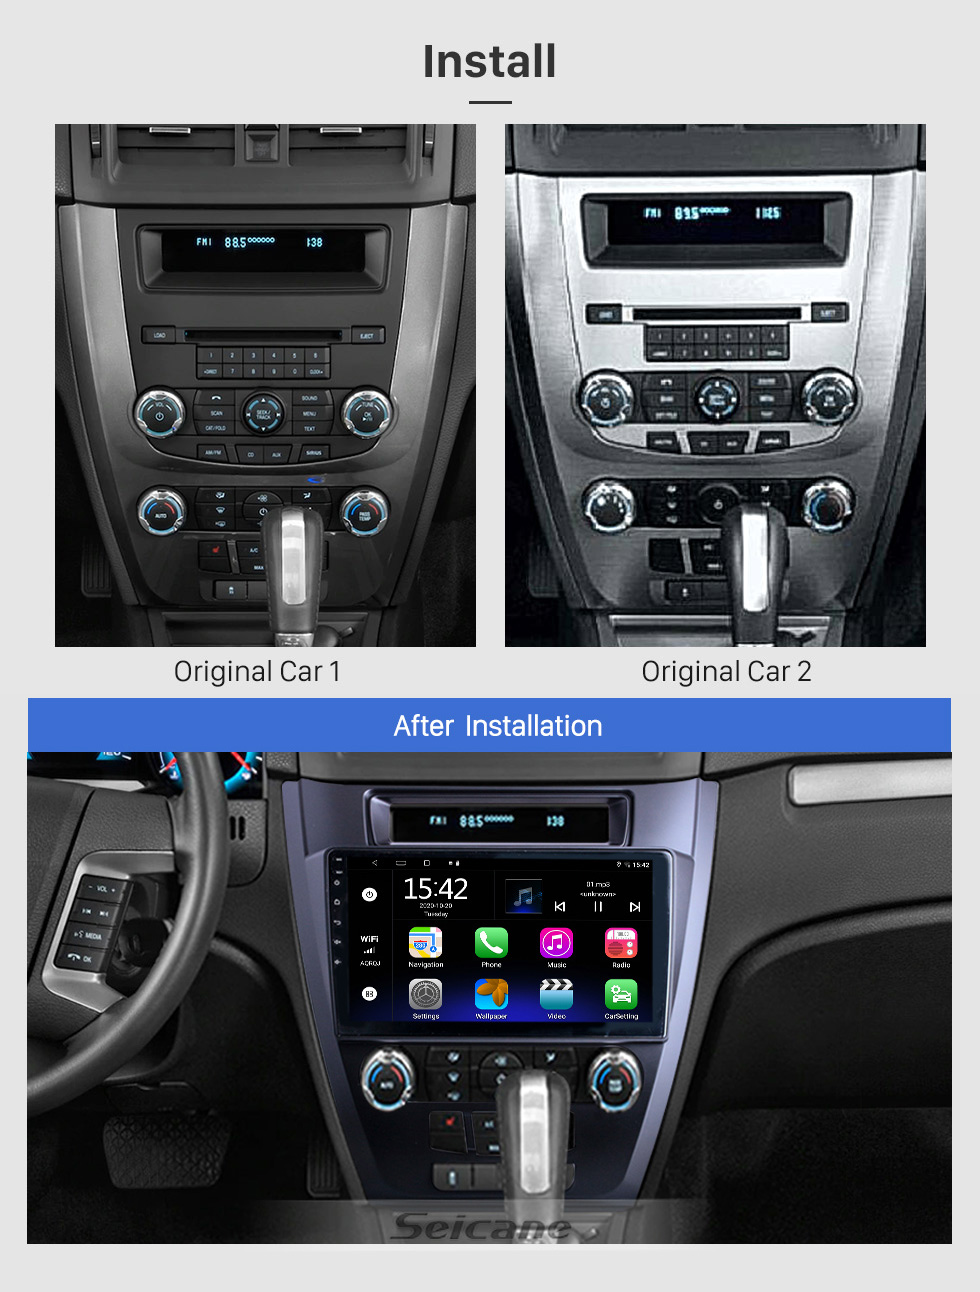 Seicane Pantalla táctil HD de 10.1 pulgadas para 2010 Ford Mustang Autoradio Android Navegación GPS para automóvil Soporte para radio de automóvil Bluetooth Cámara de visión trasera